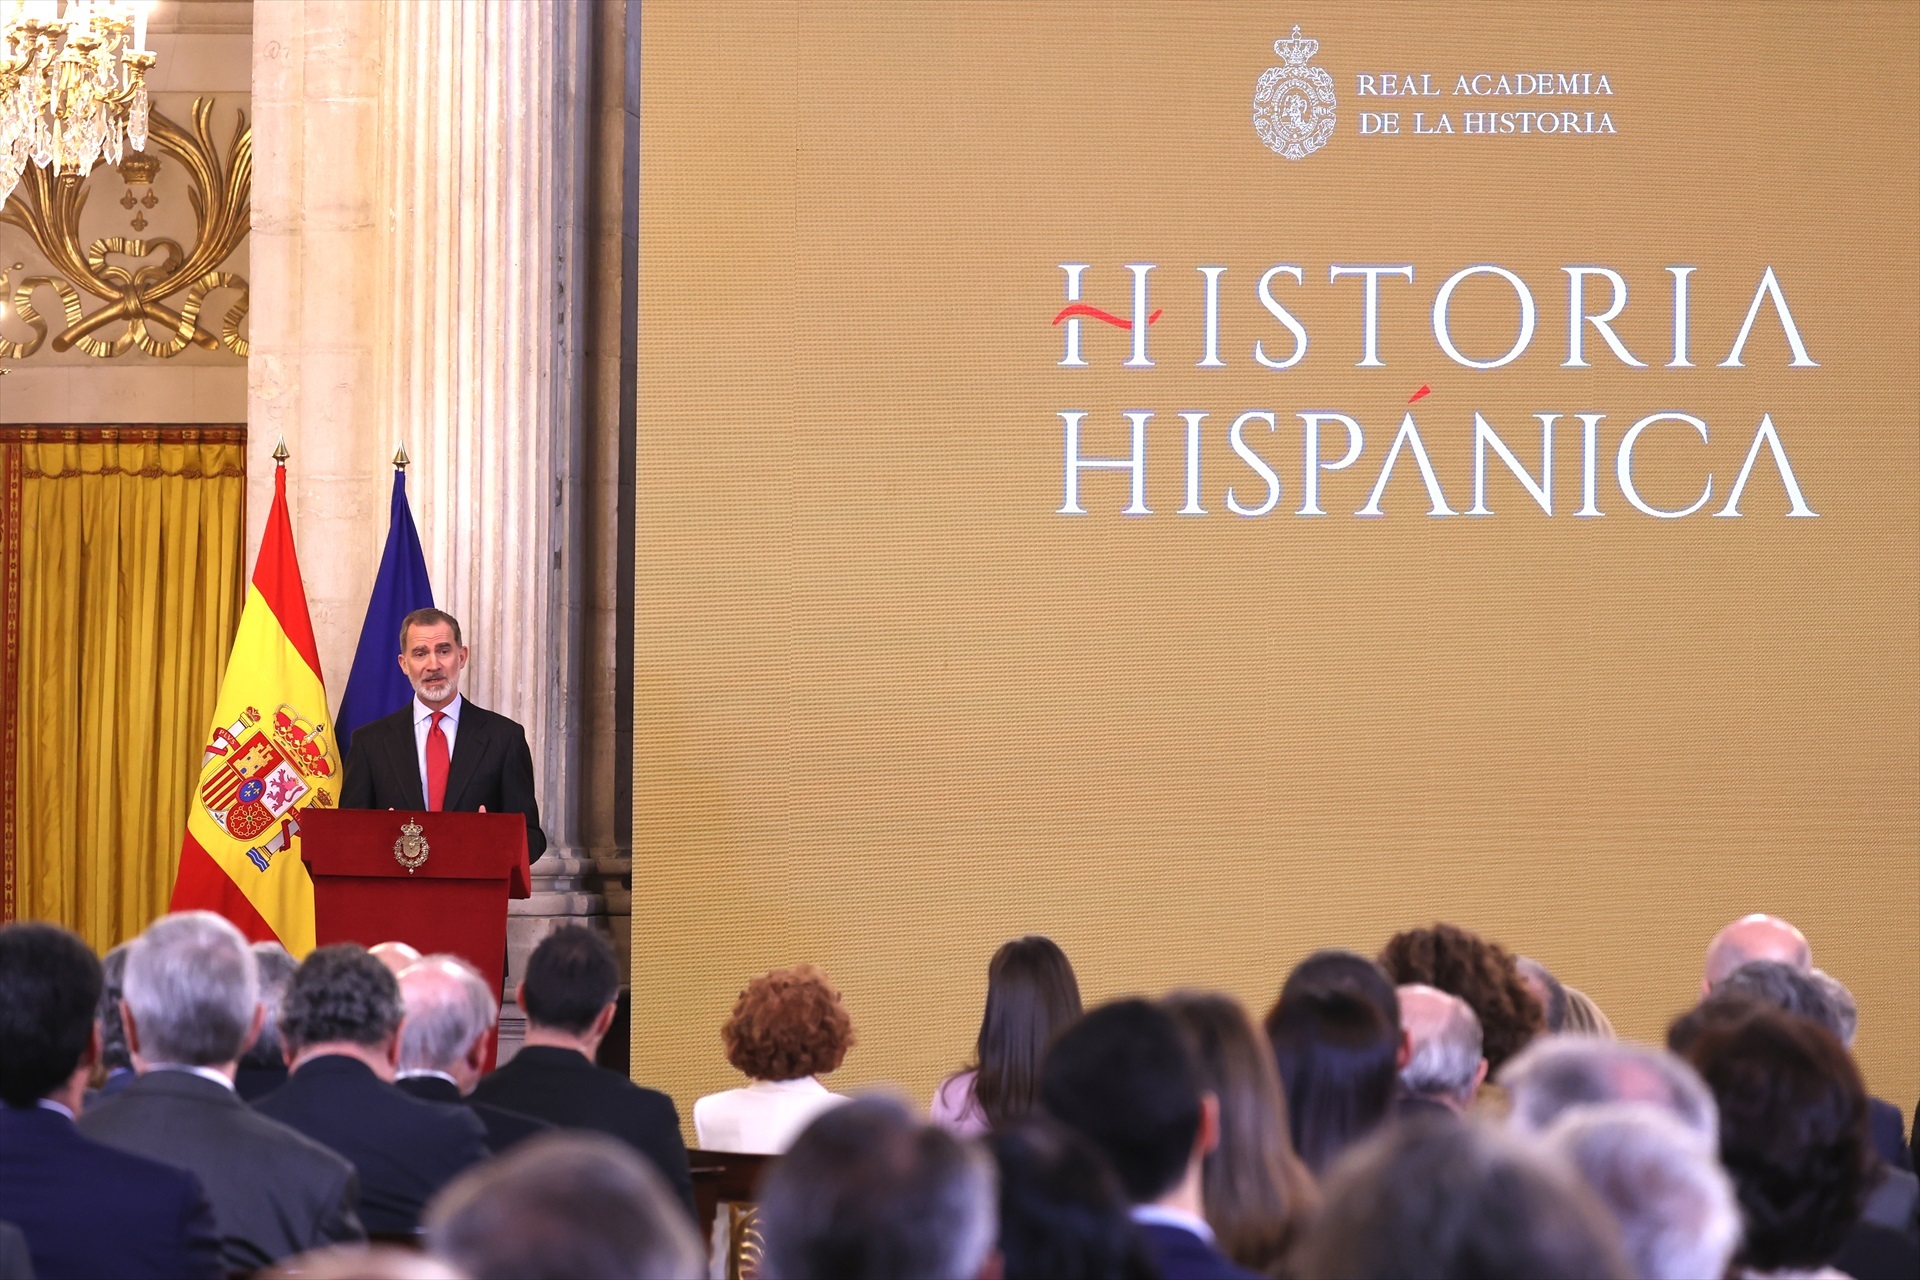 El Rey Felipe durante su discurso en el acto de presentación pública del "Portal Digital de Historia Hispánica